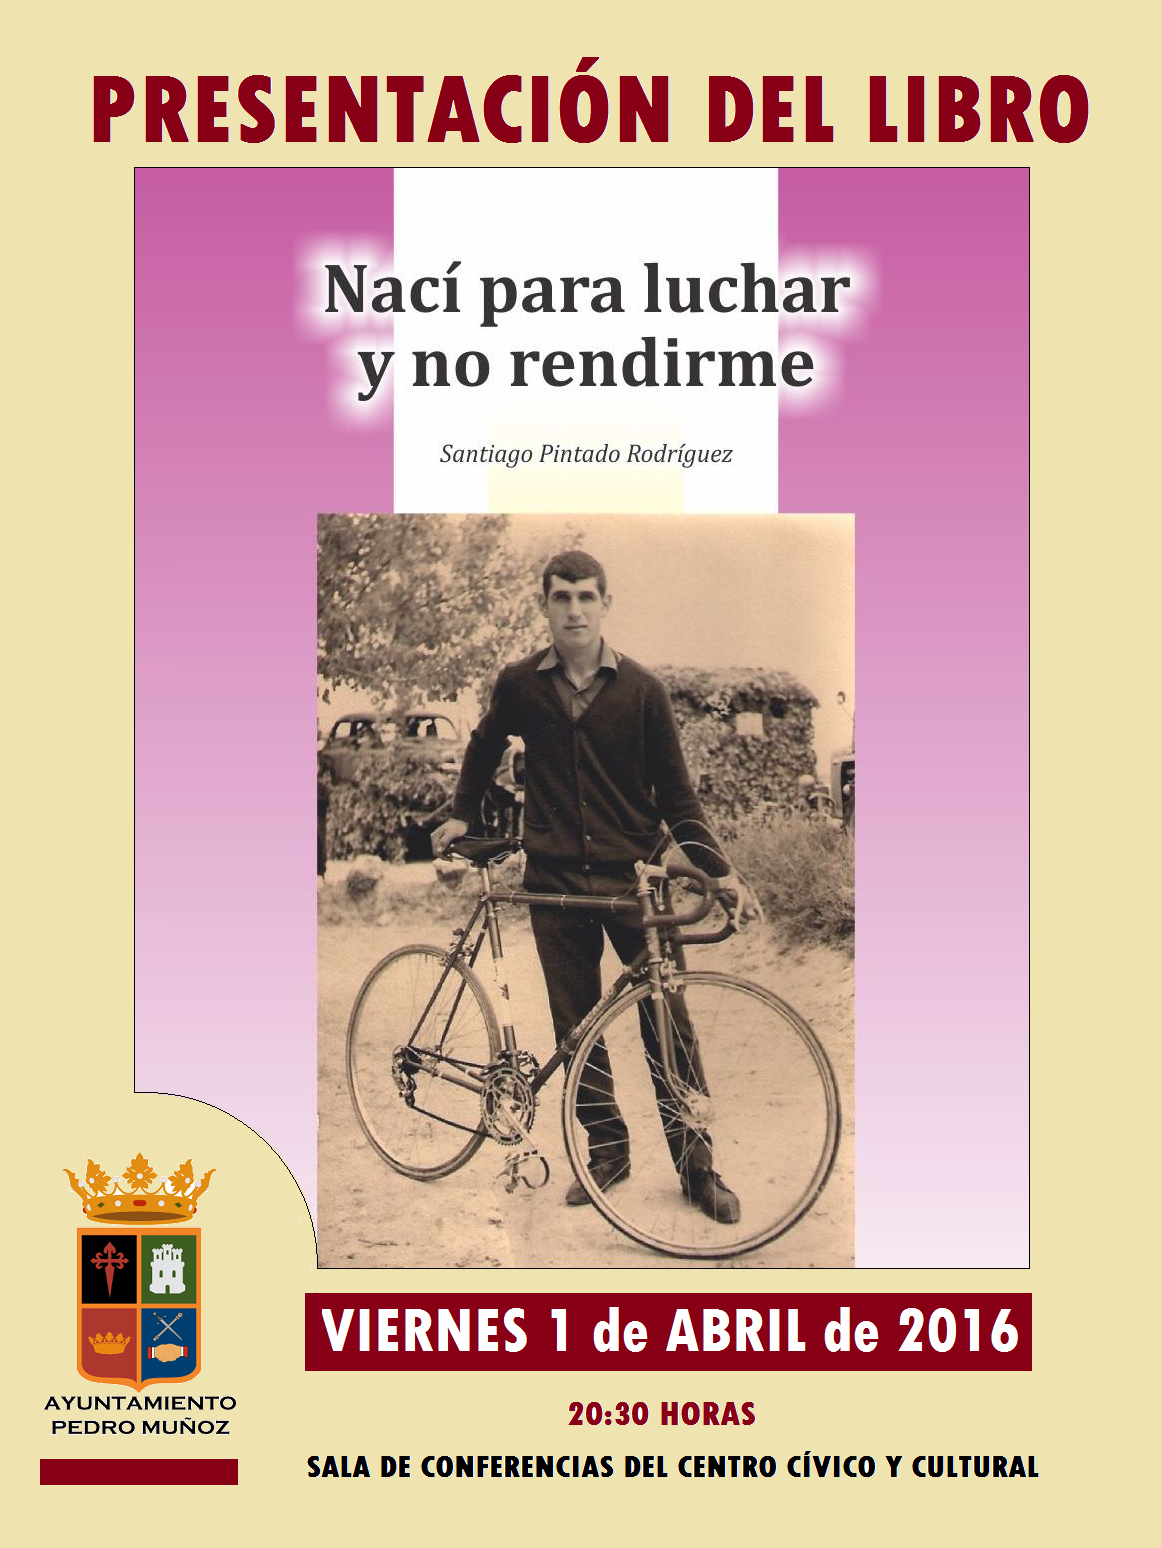 Santiago Pintado presentará su libro "Nací para luchar y no rendirme" el viernes 1 de abril